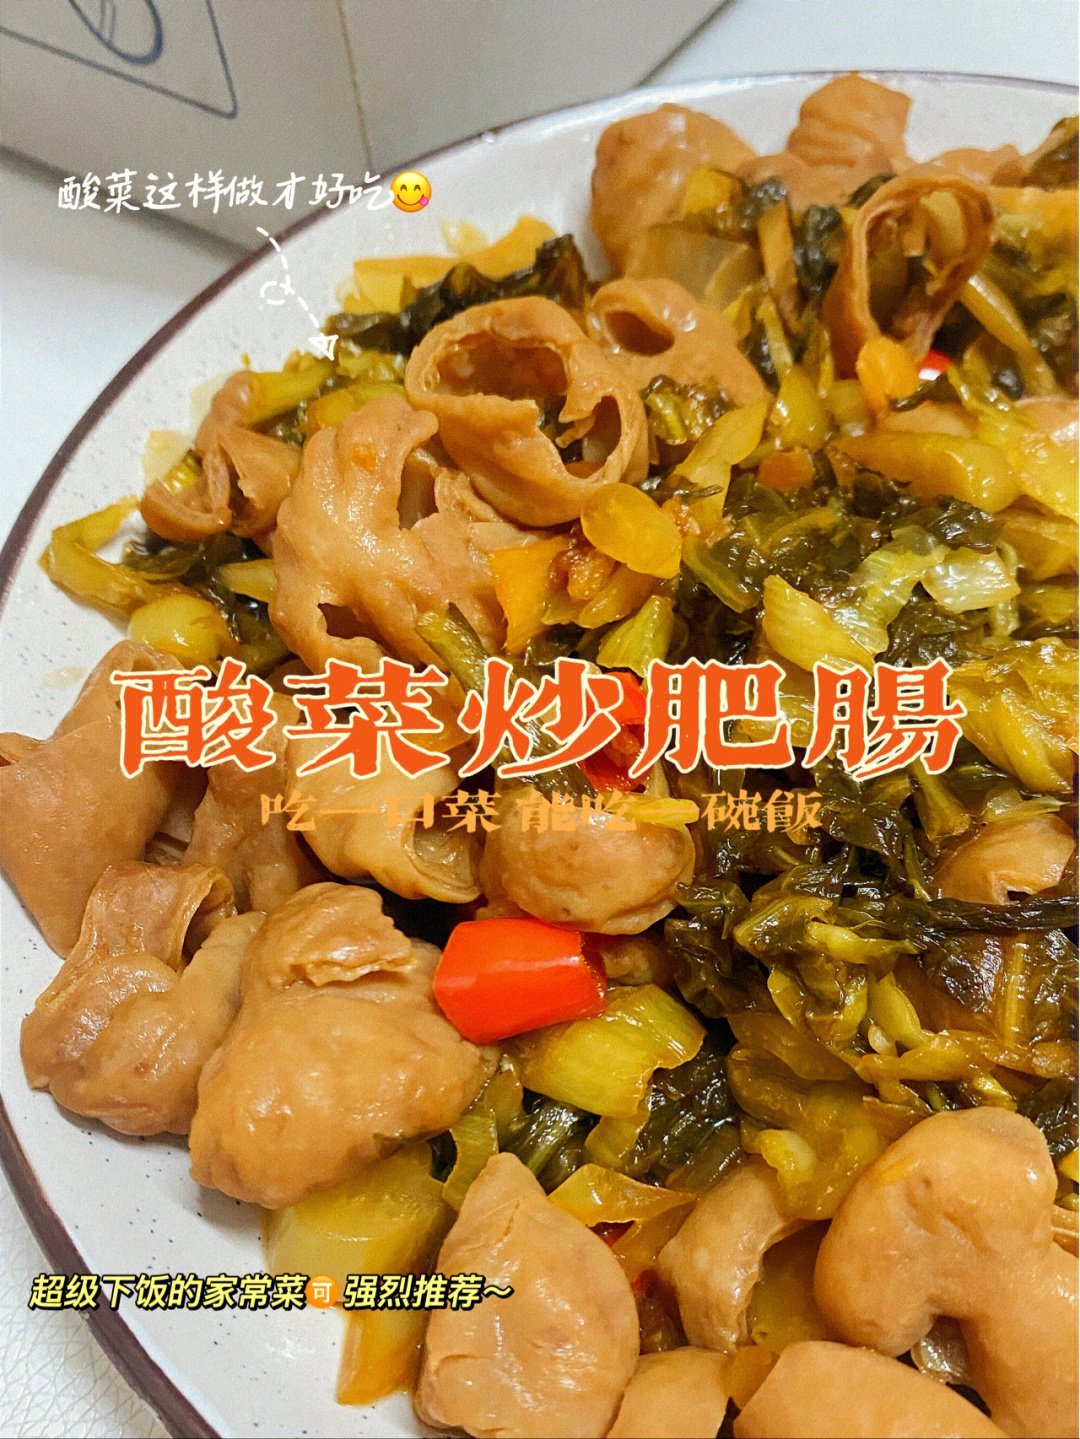 一口菜能让你吃一碗饭-7315准备食材:猪大肠,酸菜,蒜00姜,红